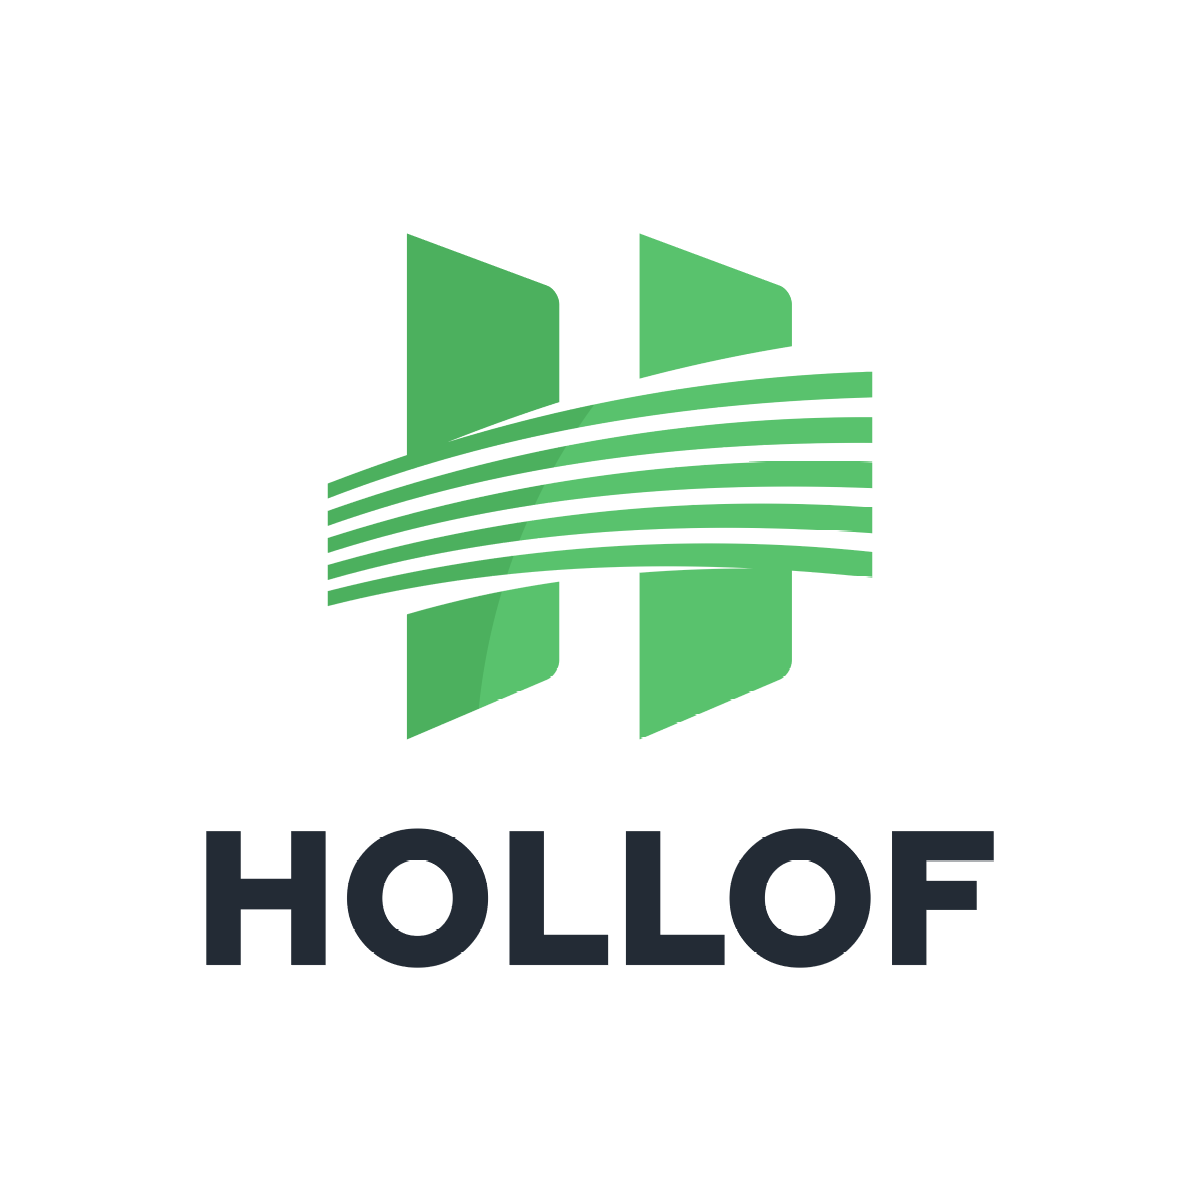 Hollof (Холлоф) - Город Нижний Новгород logo 1200х1200.png